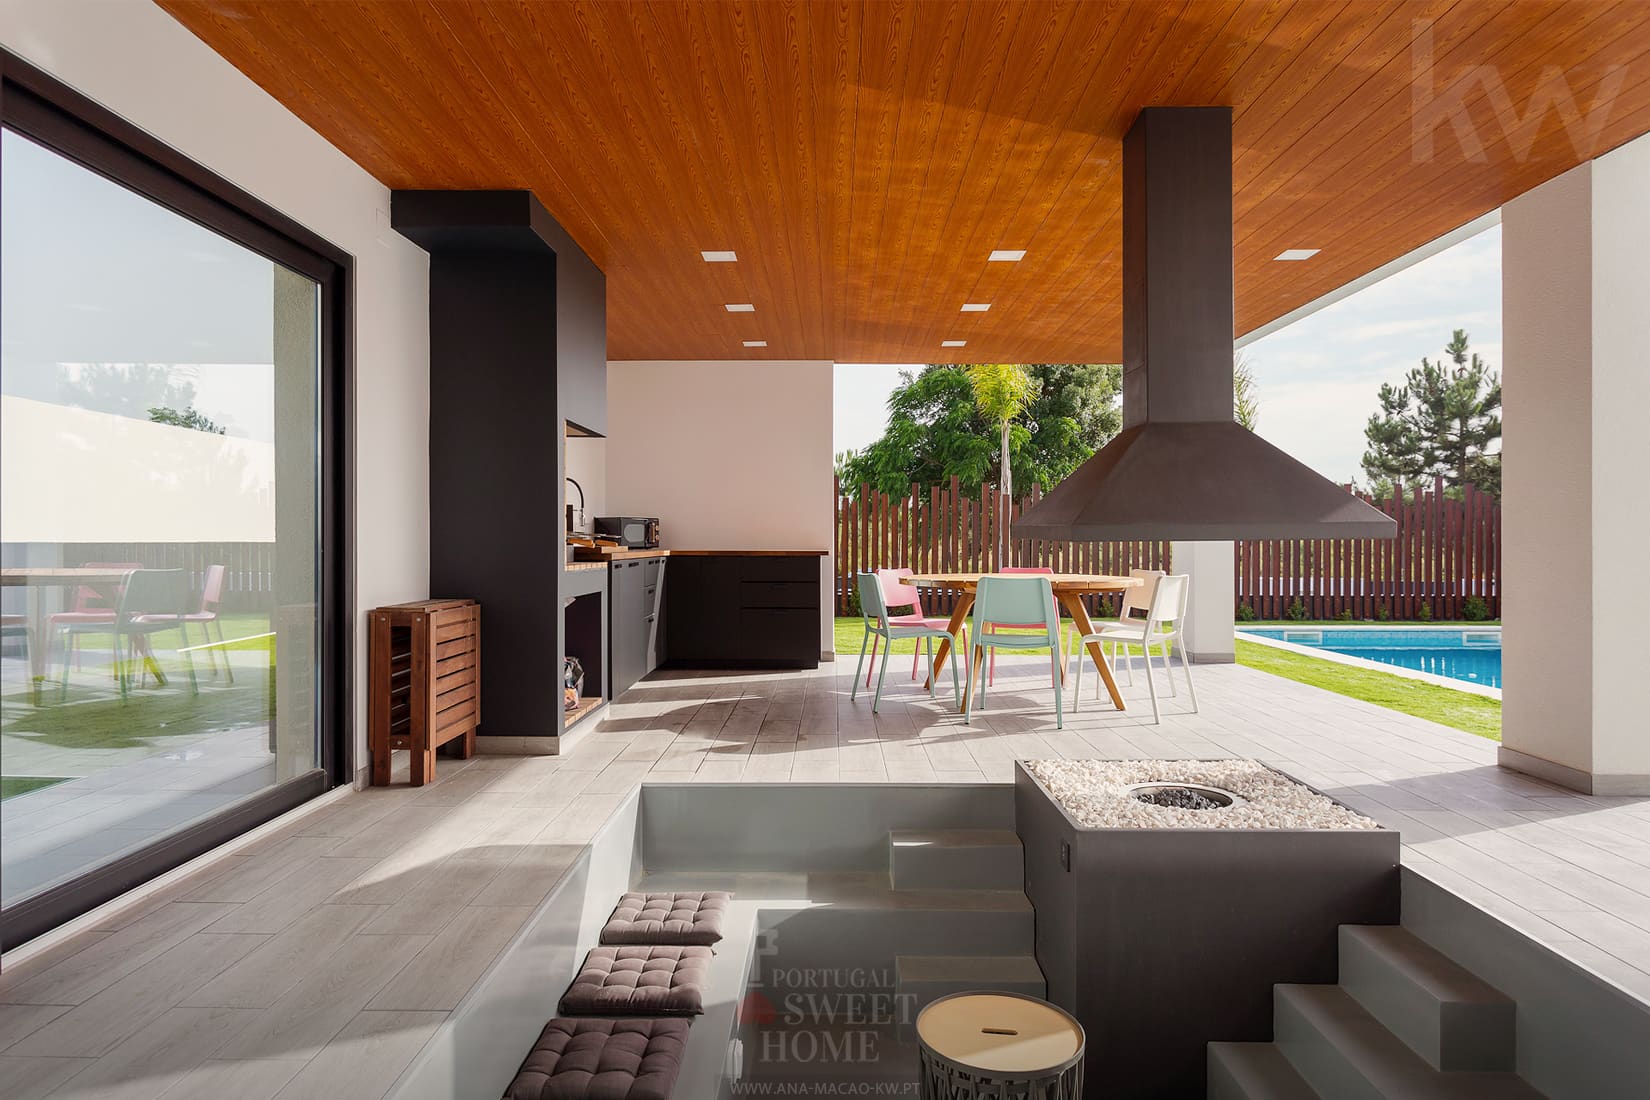 Espace de loisirs (44 m2) avec foyer extérieur